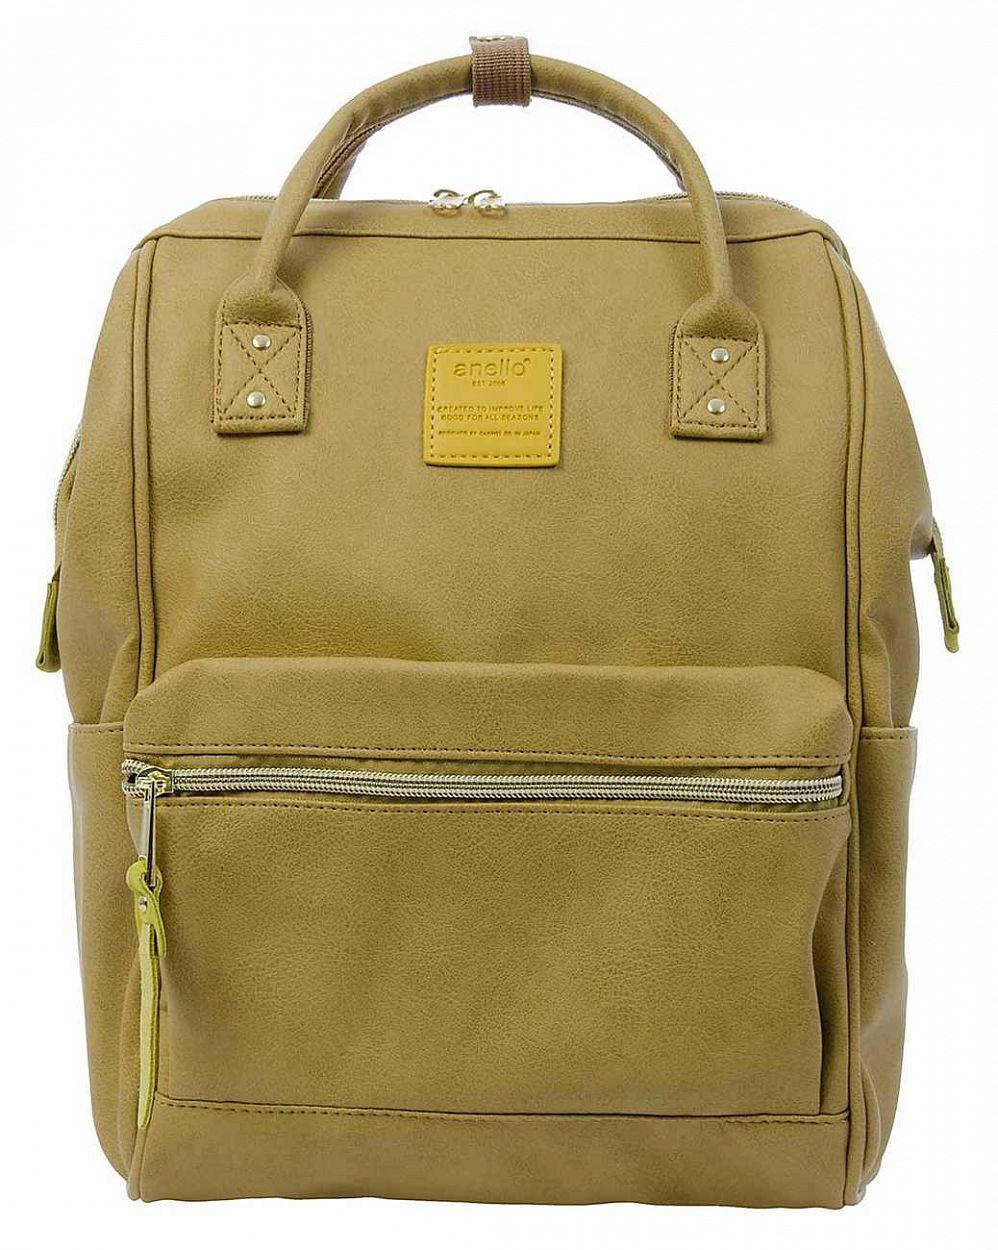 Рюкзак с двумя ручками кожаный Anello Japan AT-B1212 Lime отзывы